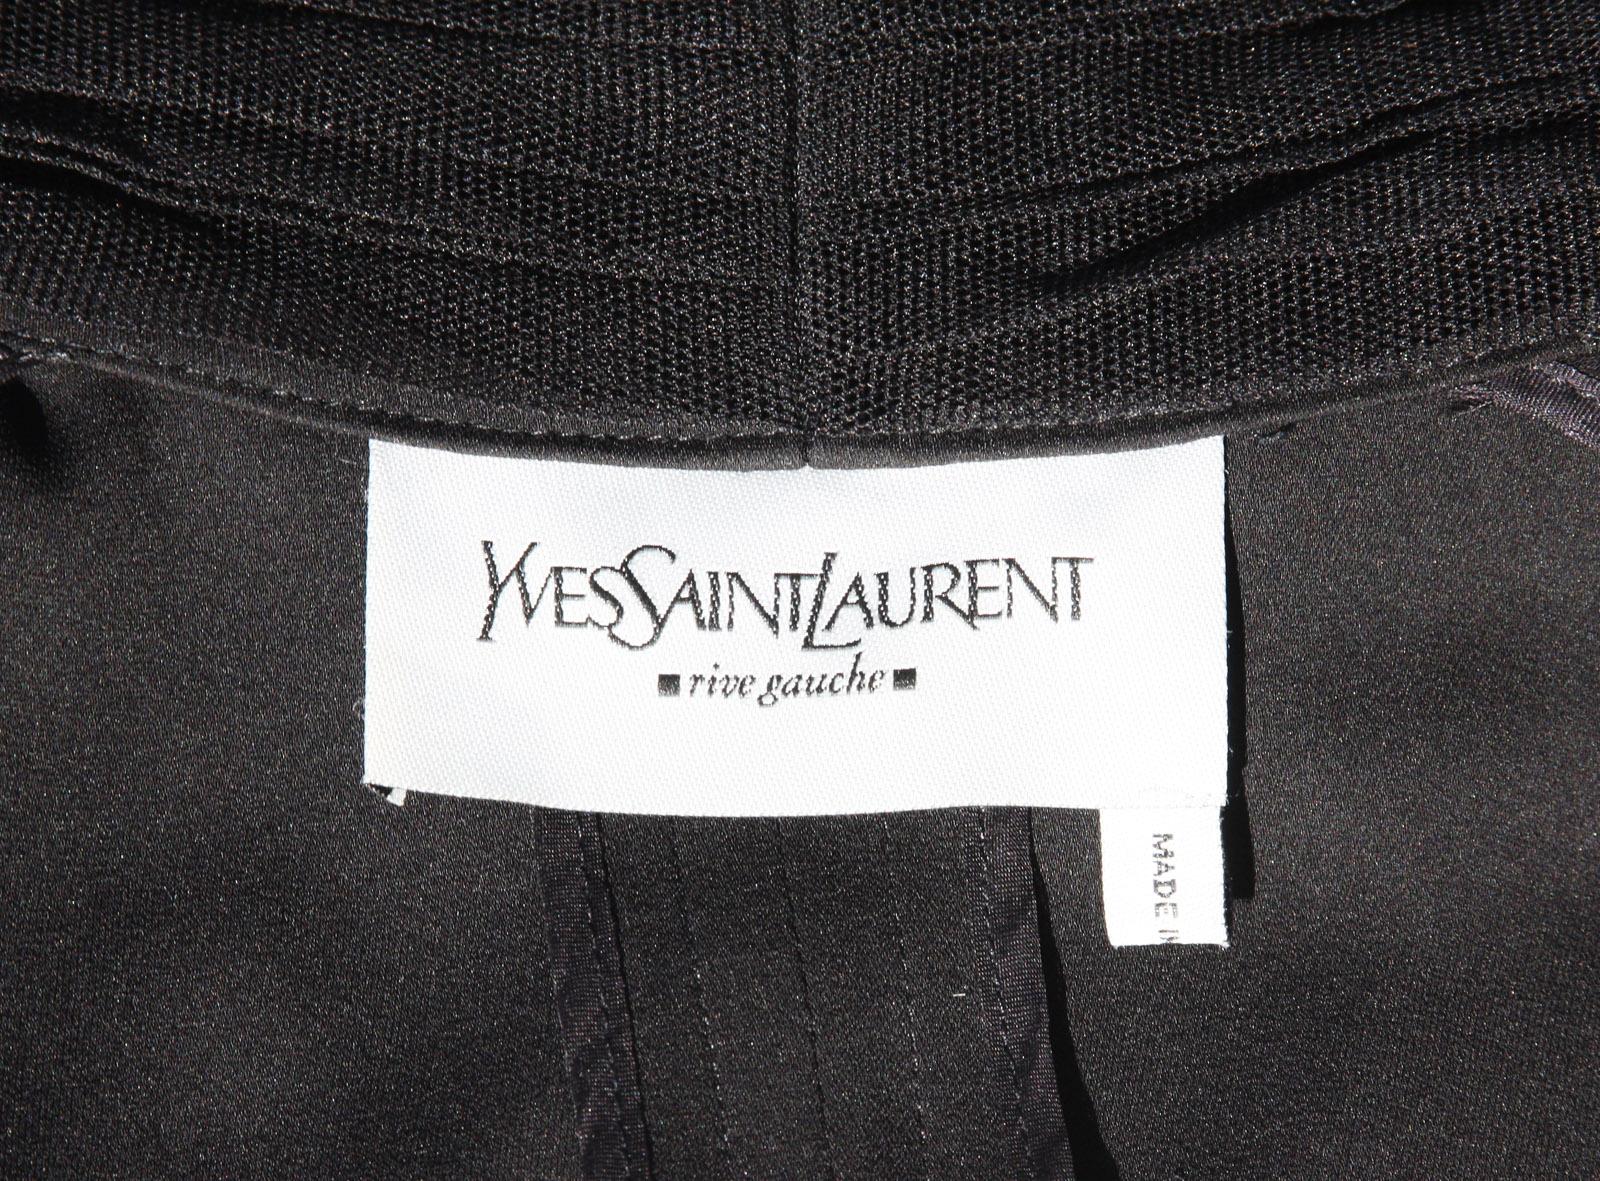 Tom Ford for Yves Saint Laurent F/W 2002 Black Silk Tulle Jacket Blazer 36, 38  8